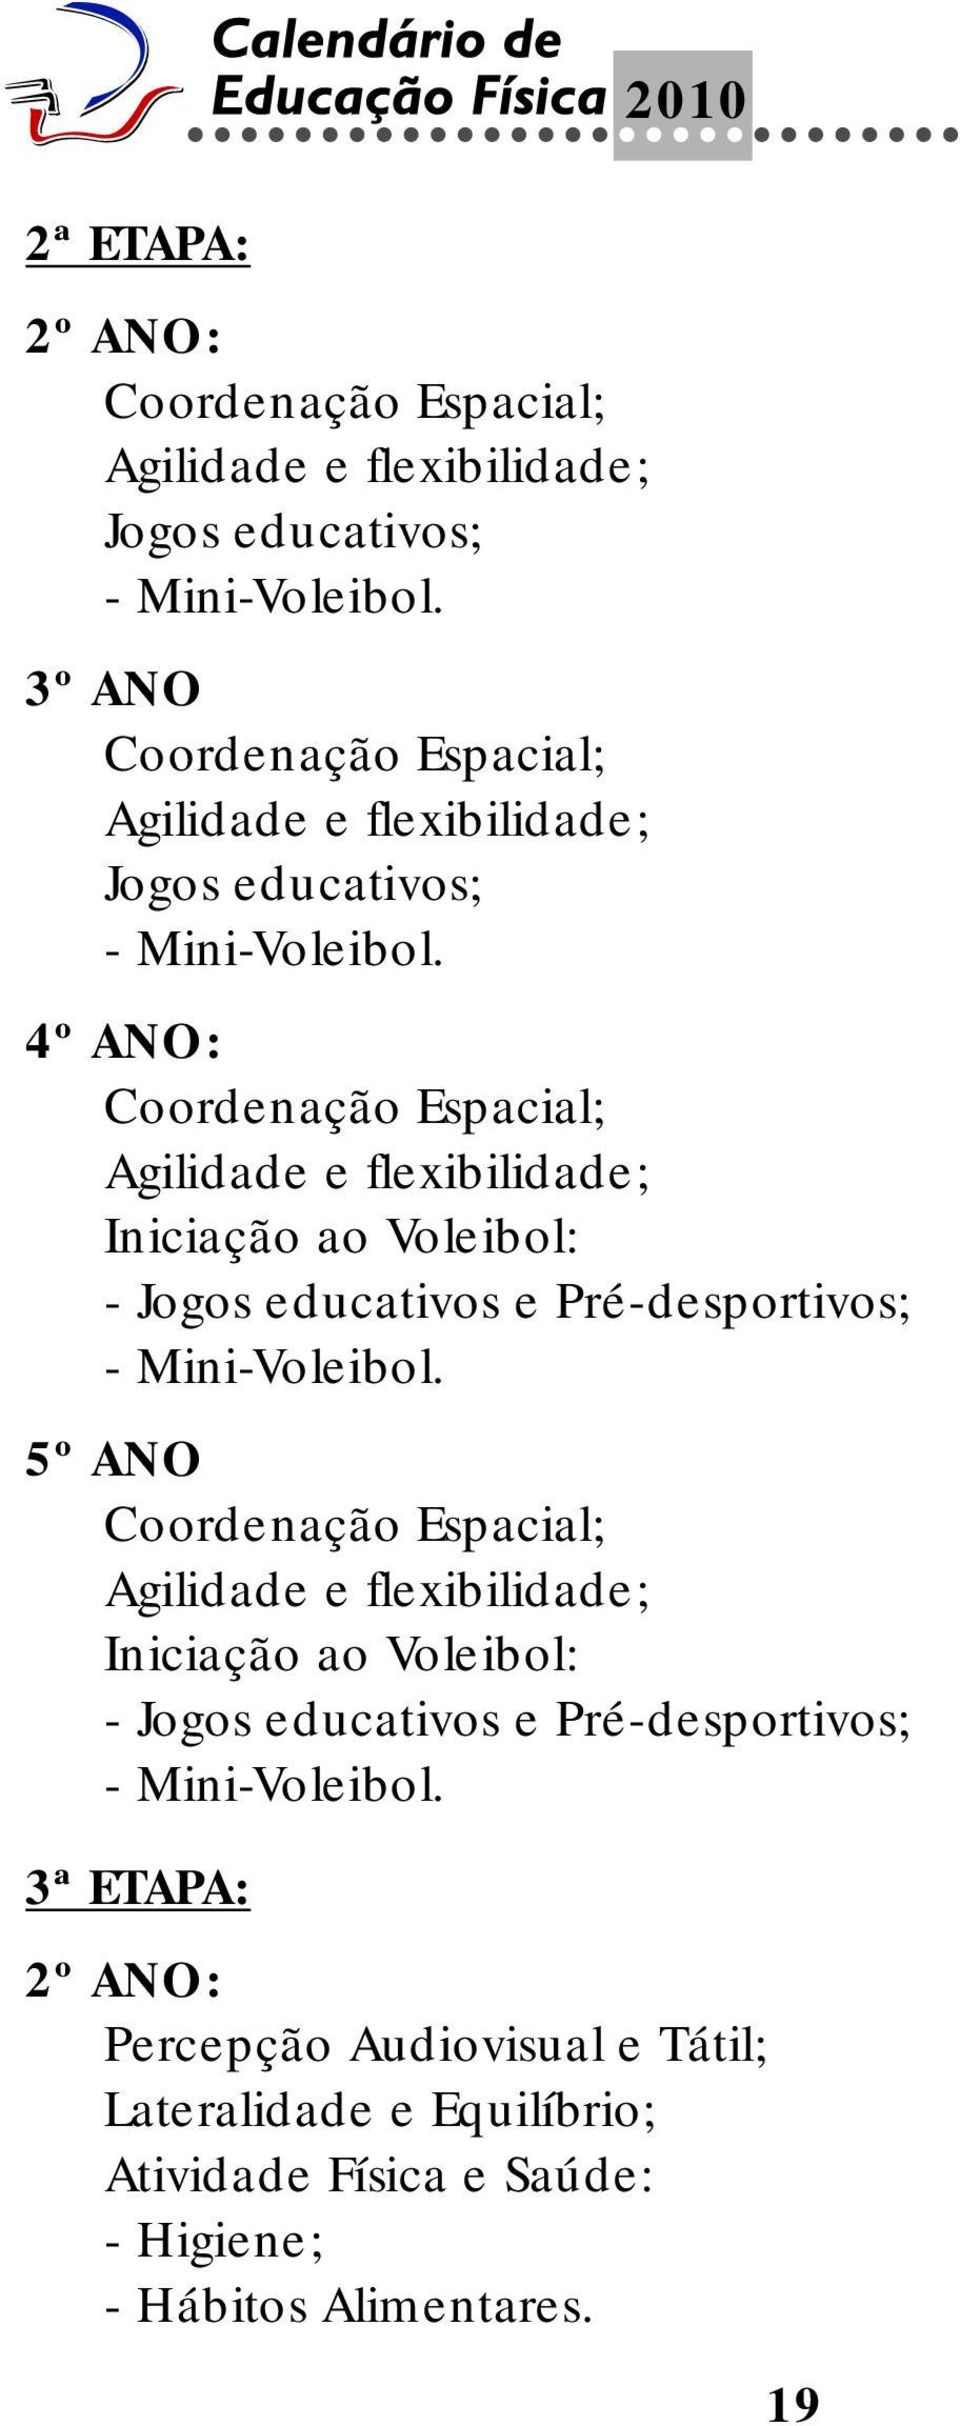 4º ANO: Coordenação Espacial; Agilidade e flexibilidade; Iniciação ao Voleibol: - Jogos educativos e Pré-desportivos; - Mini-Voleibol.